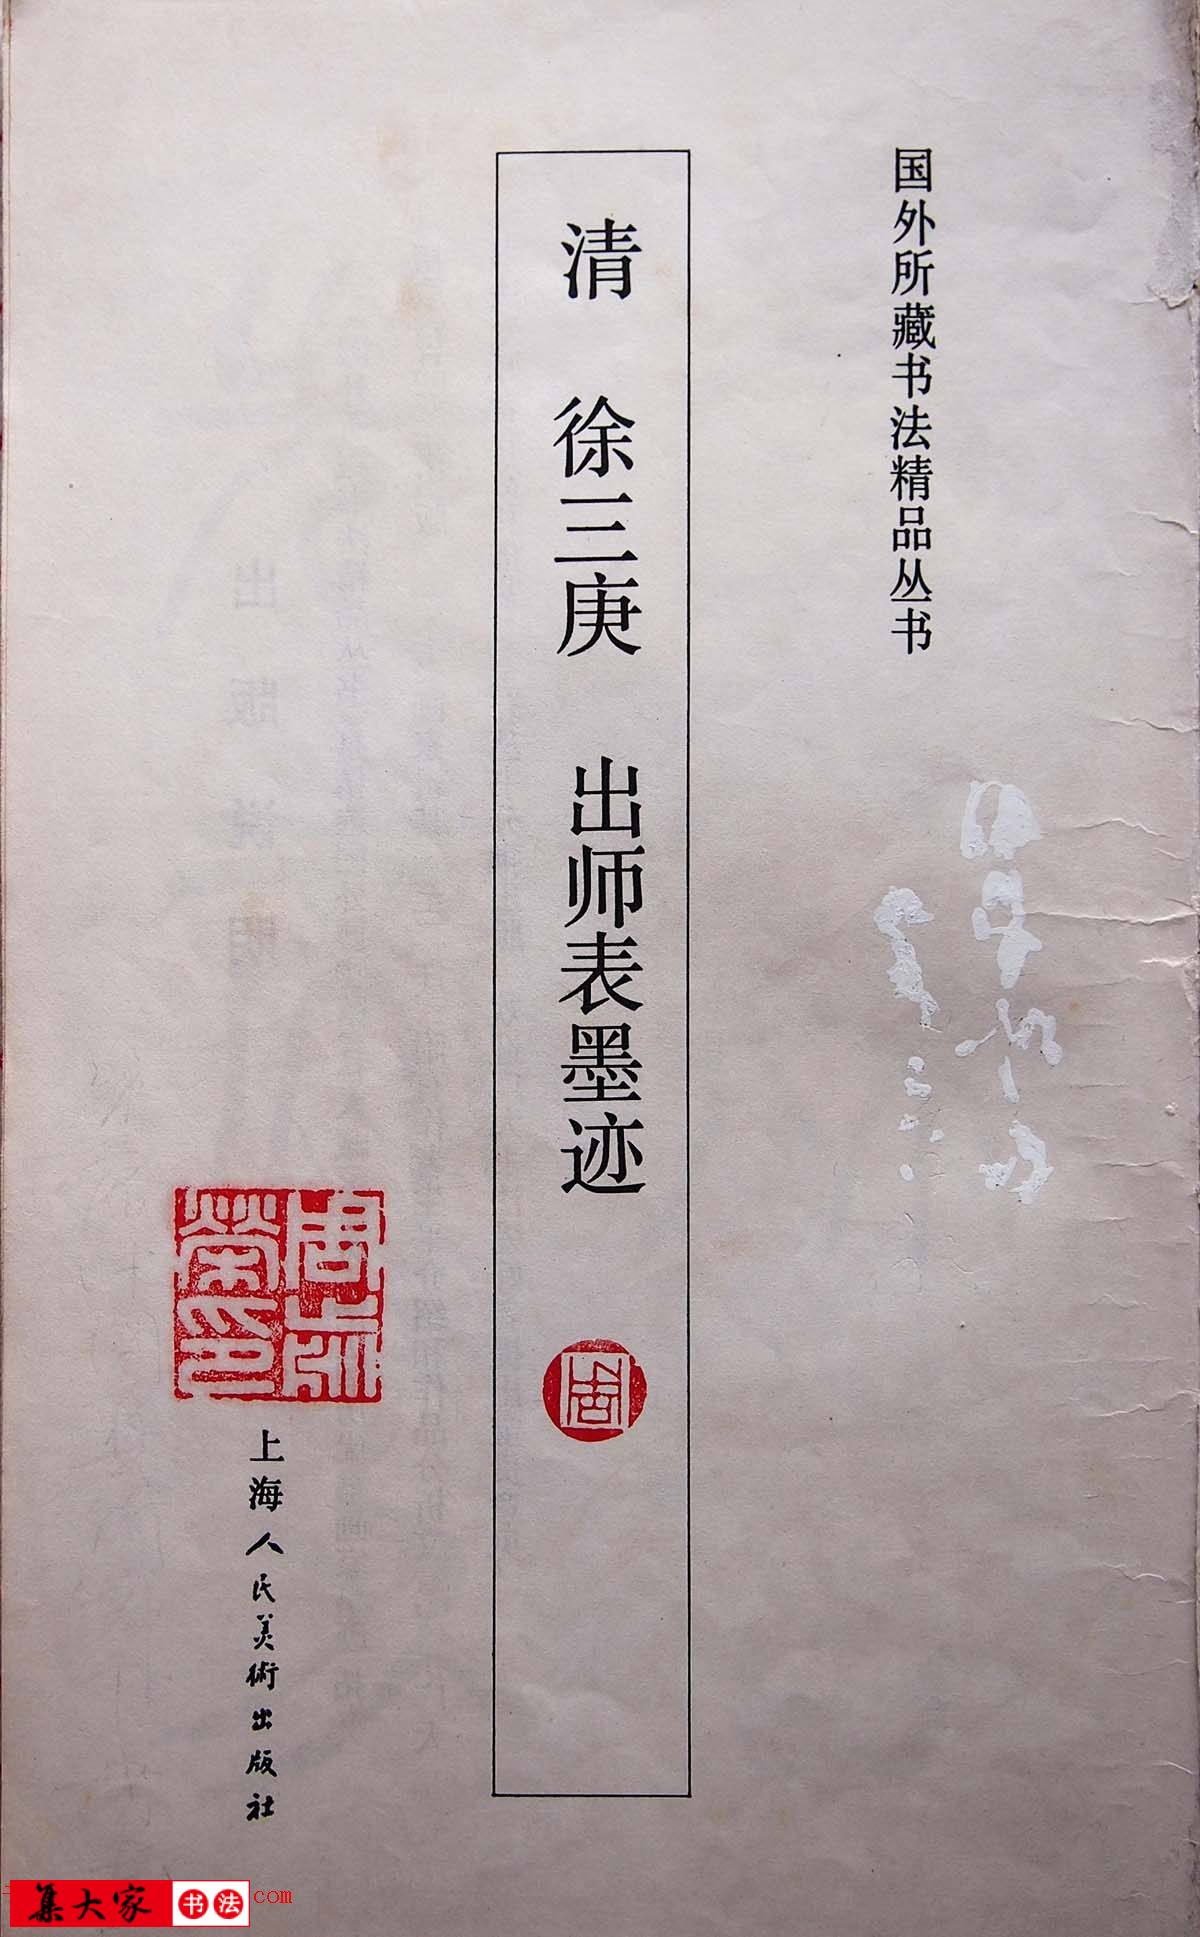 学习篆书的最好范本《清徐三庚出师表墨迹》